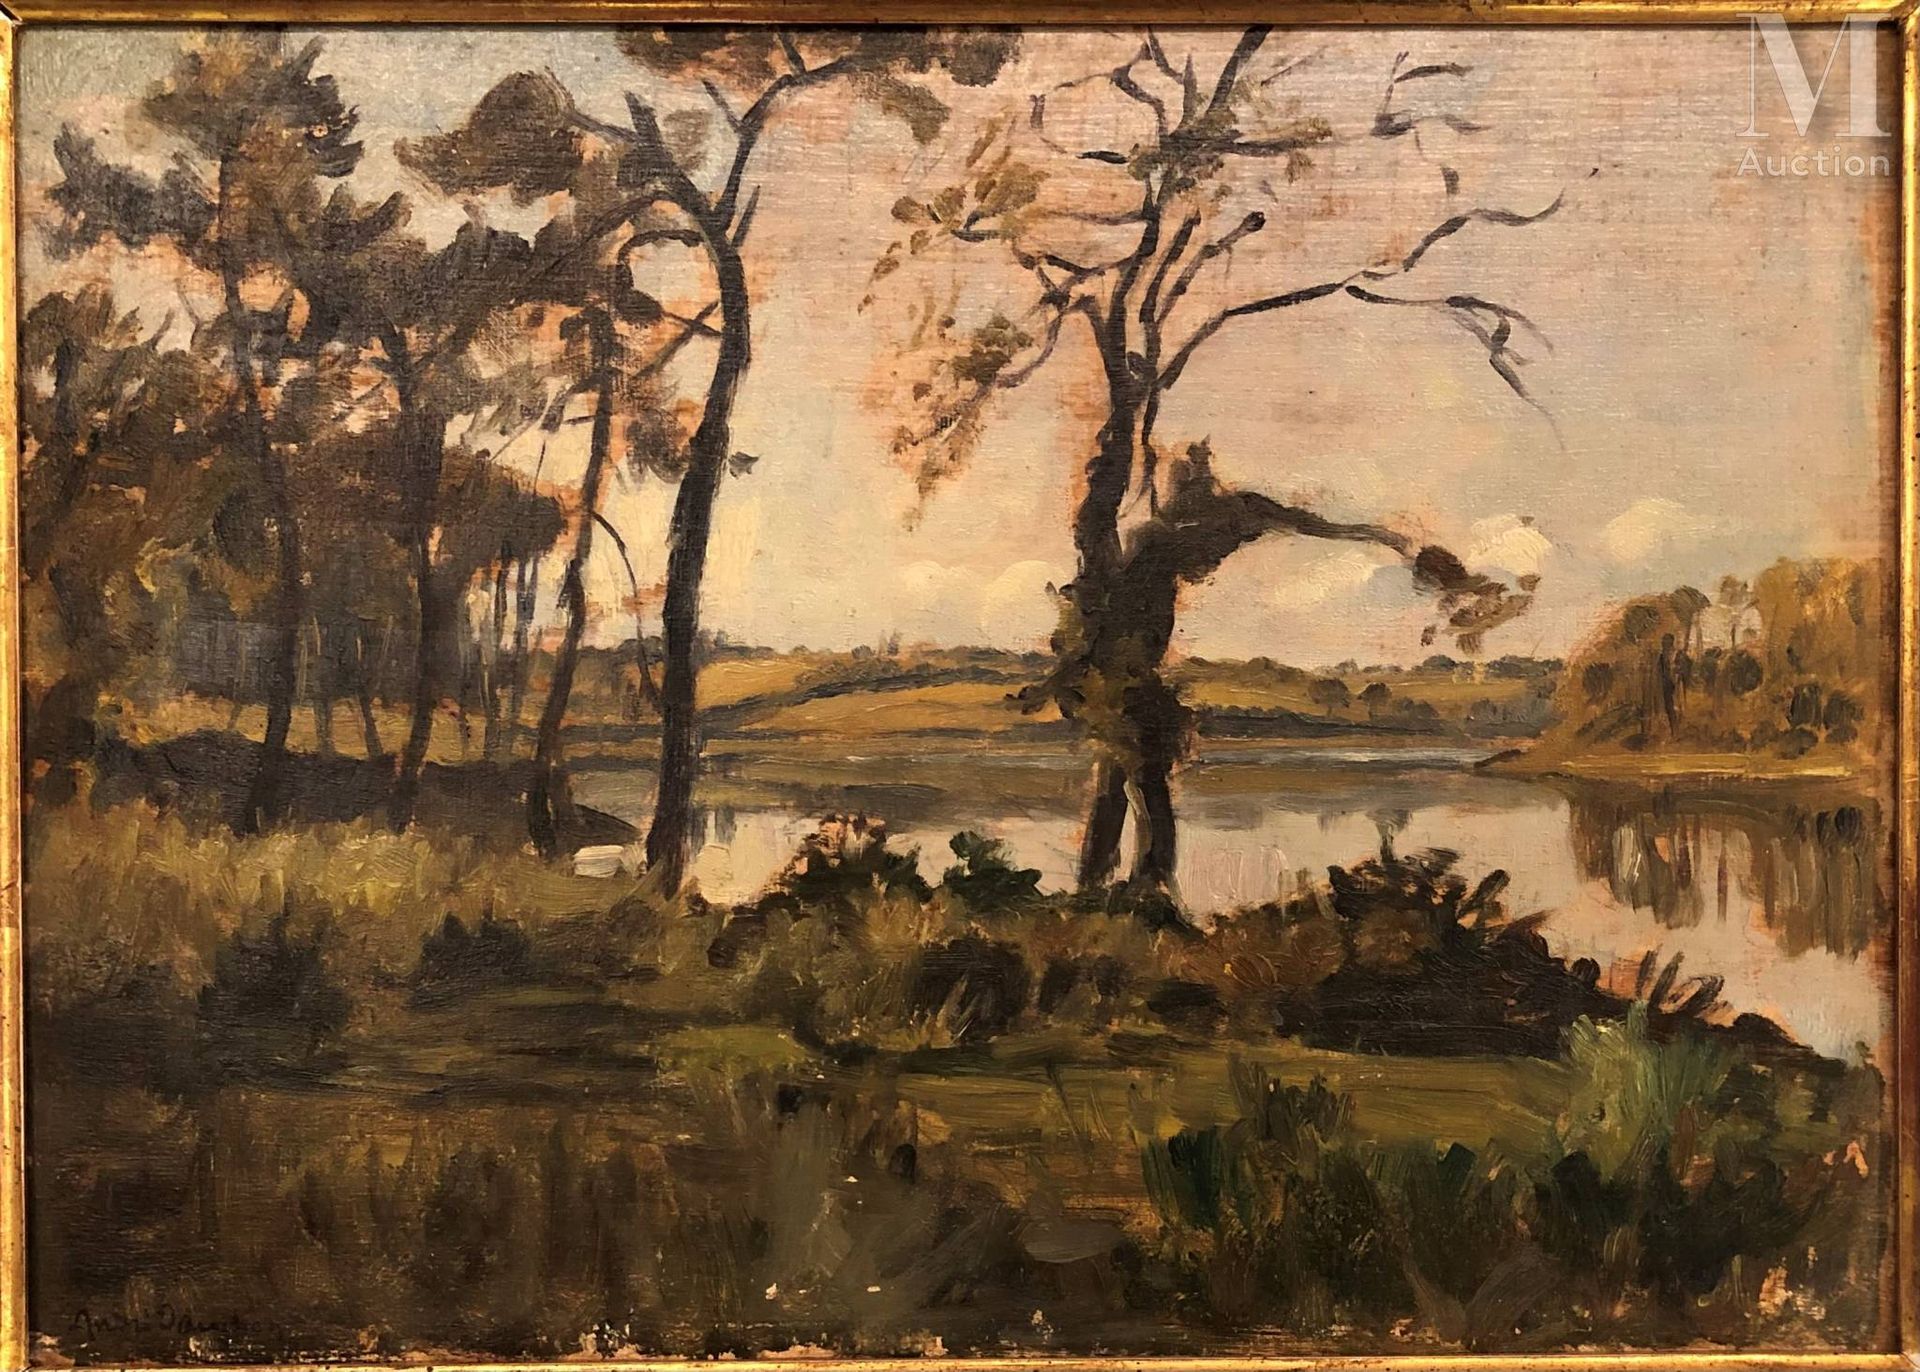 André DAUCHEZ (1870-1948) 池塘

板上油彩
23,5 x 33 cm 
左下角有André Dauchez的签名